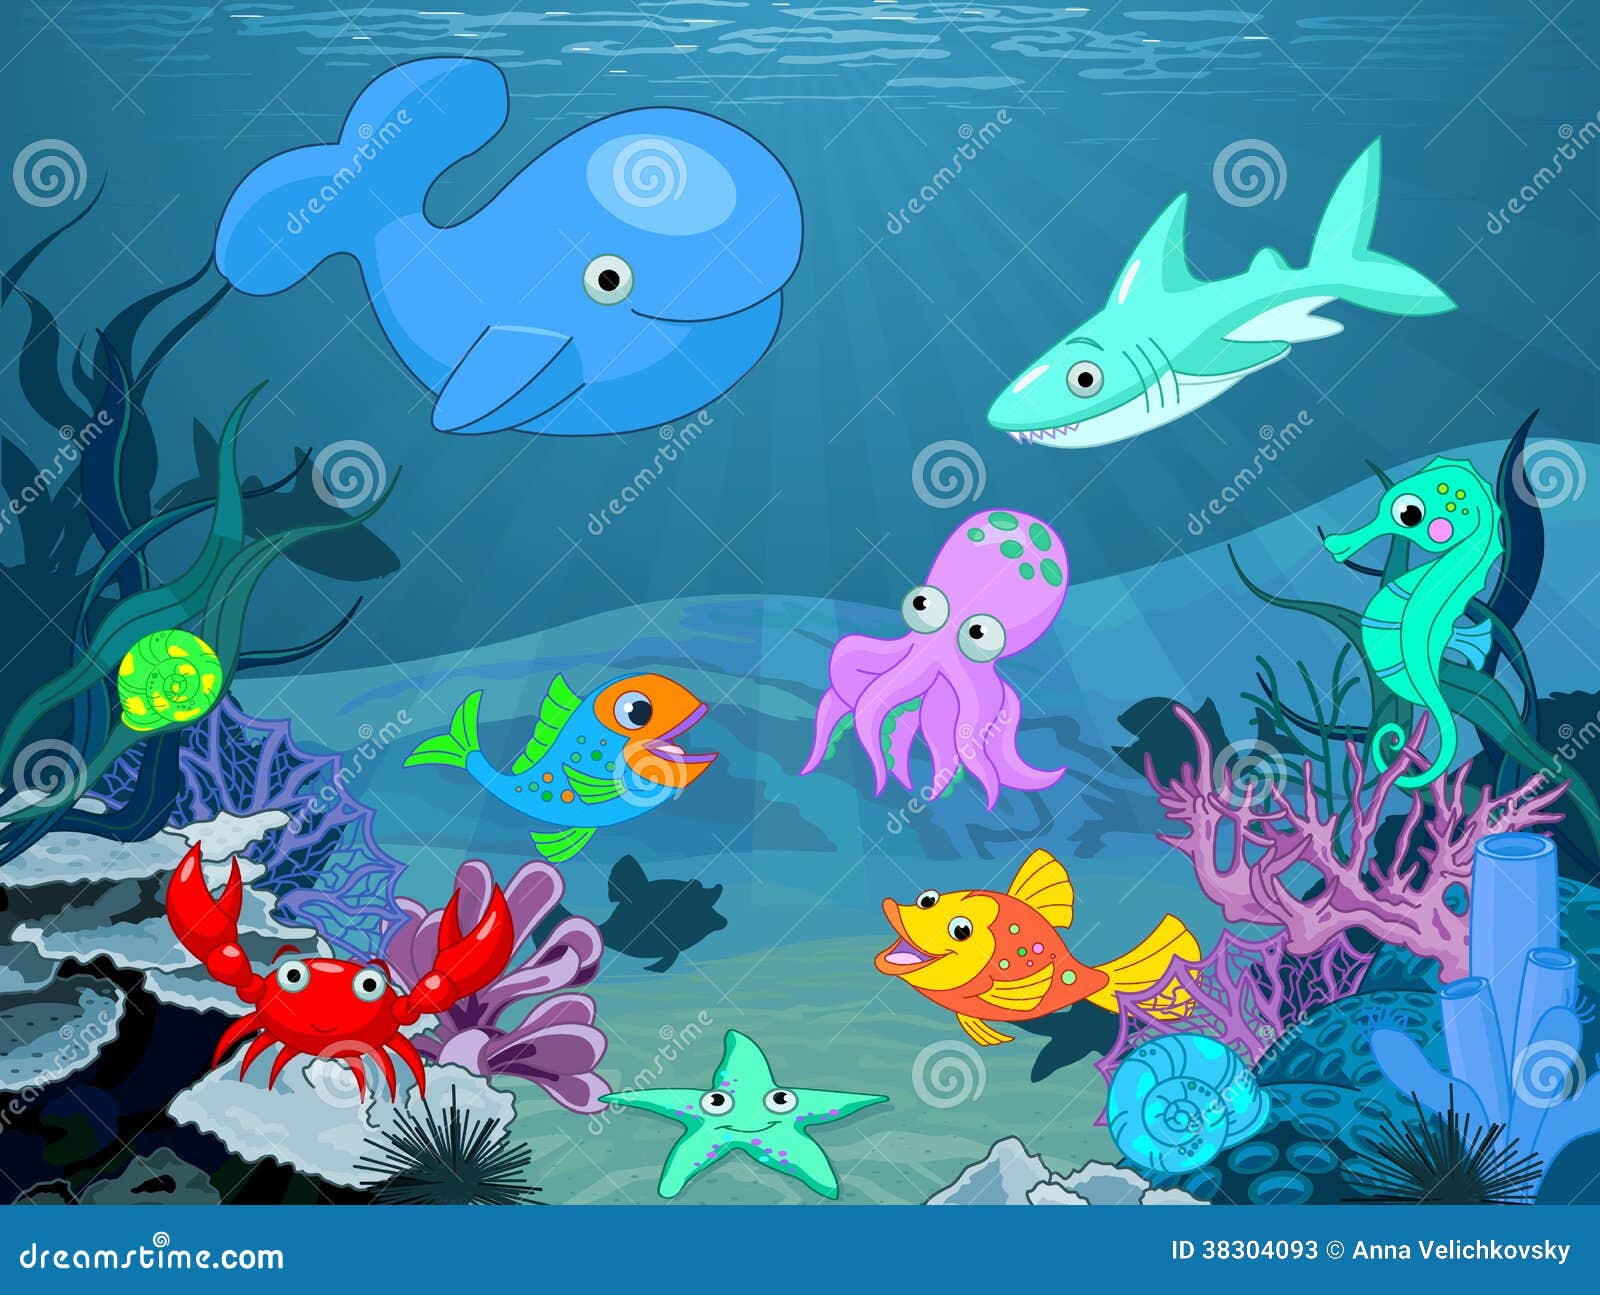 Illustratieachtergrond van het onderwaterleven